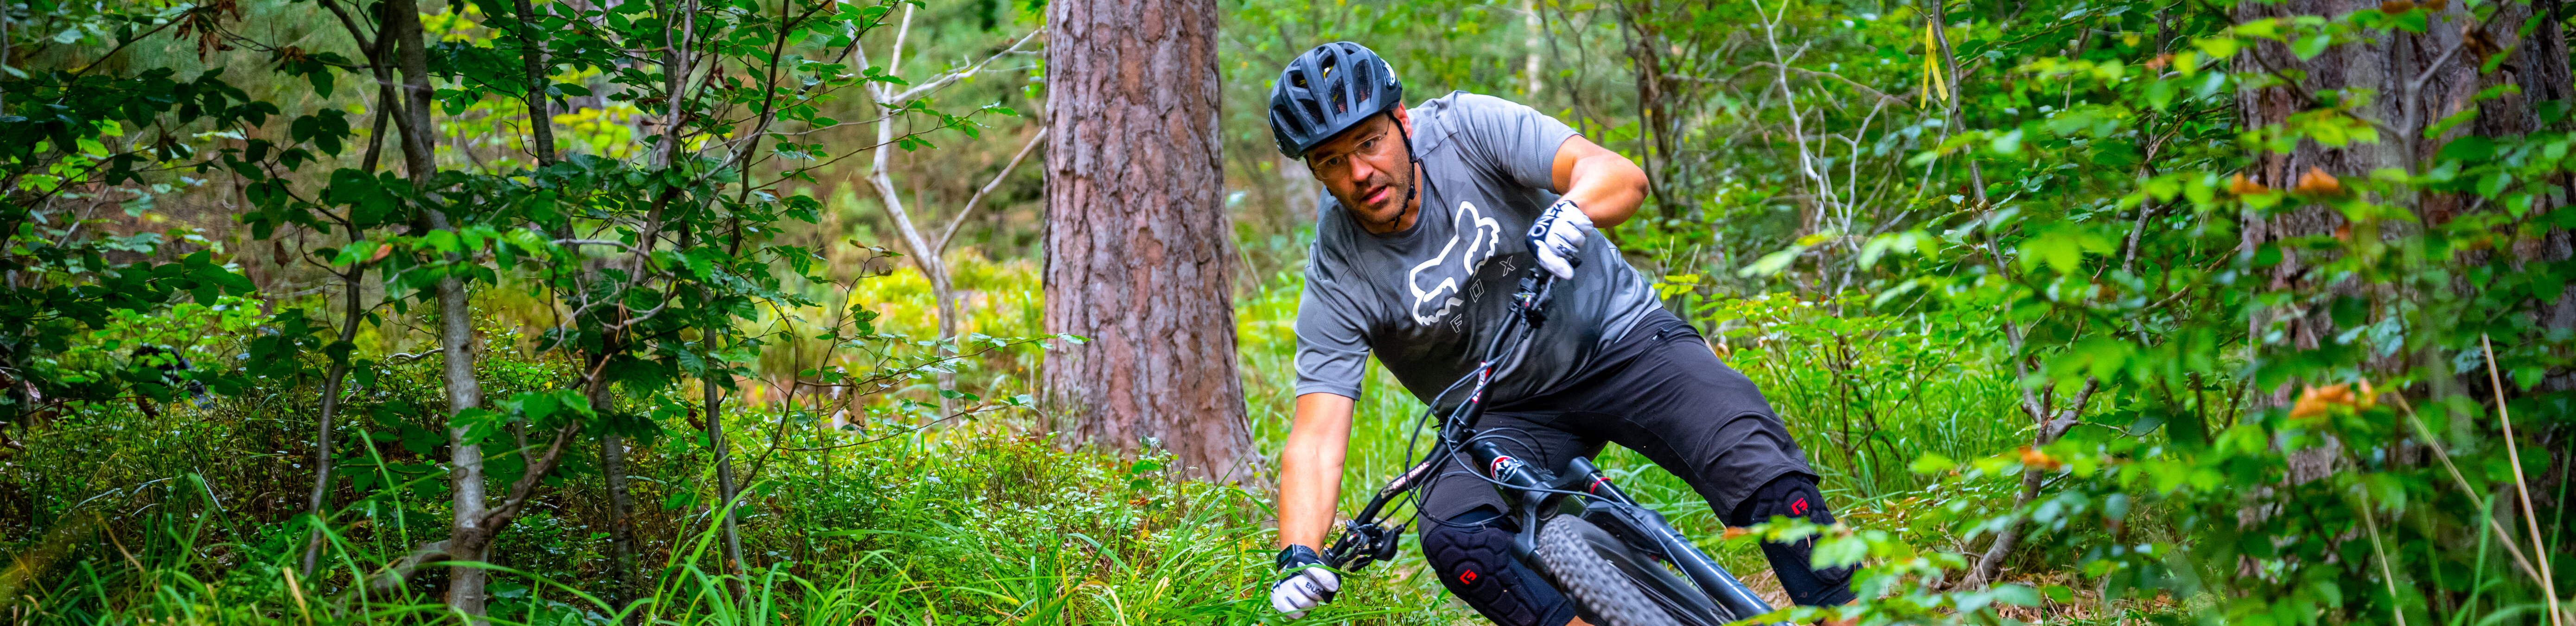 Ein Mann fährt auf einem Mountainbike im Wald